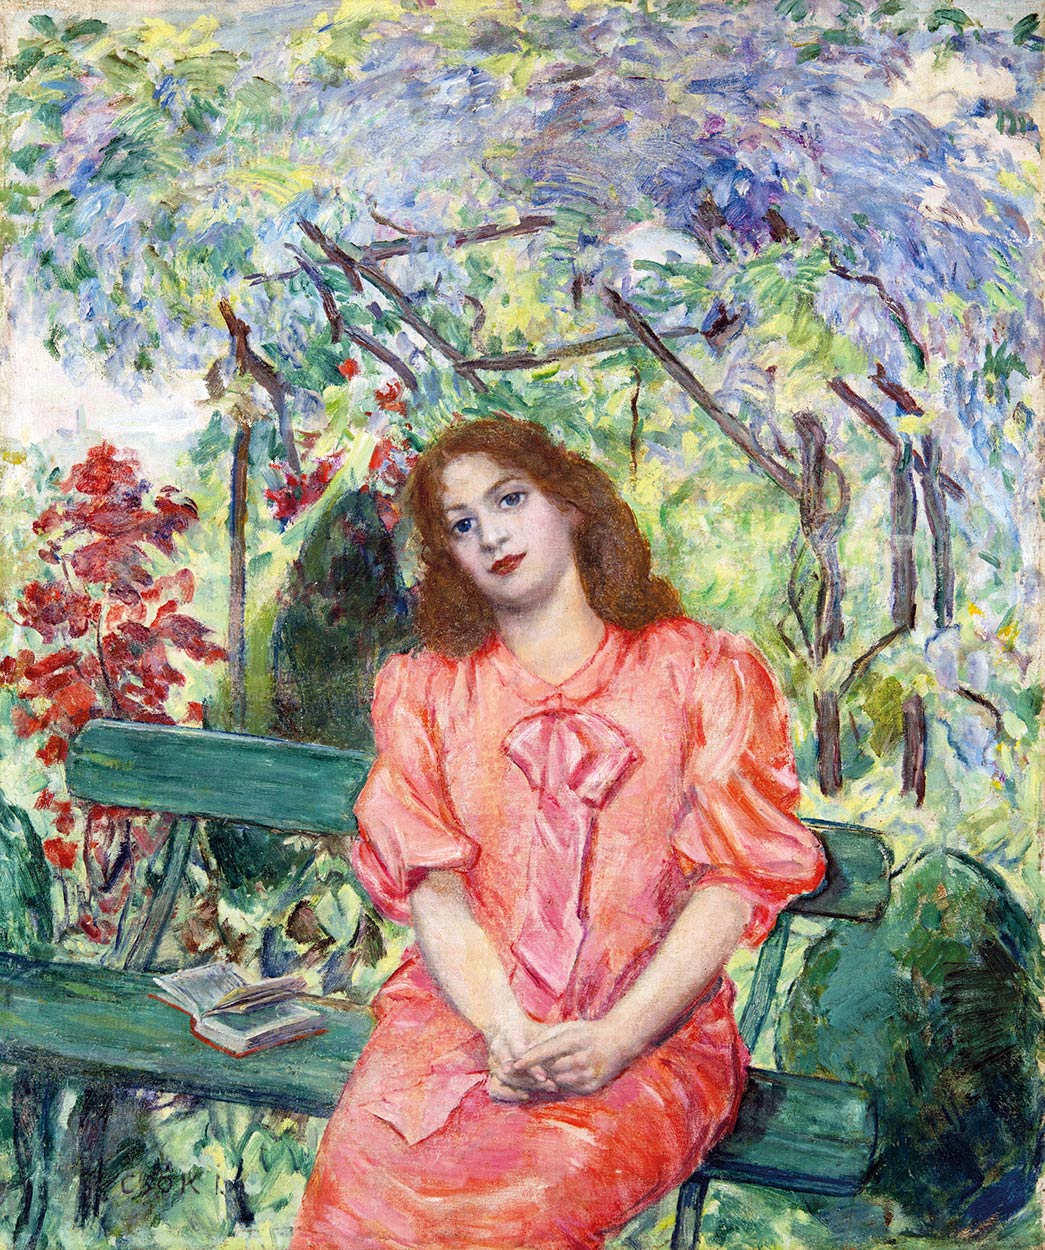 Csók István (1865-1961) Lugasban, Júlia a lugasban, 1905 körül